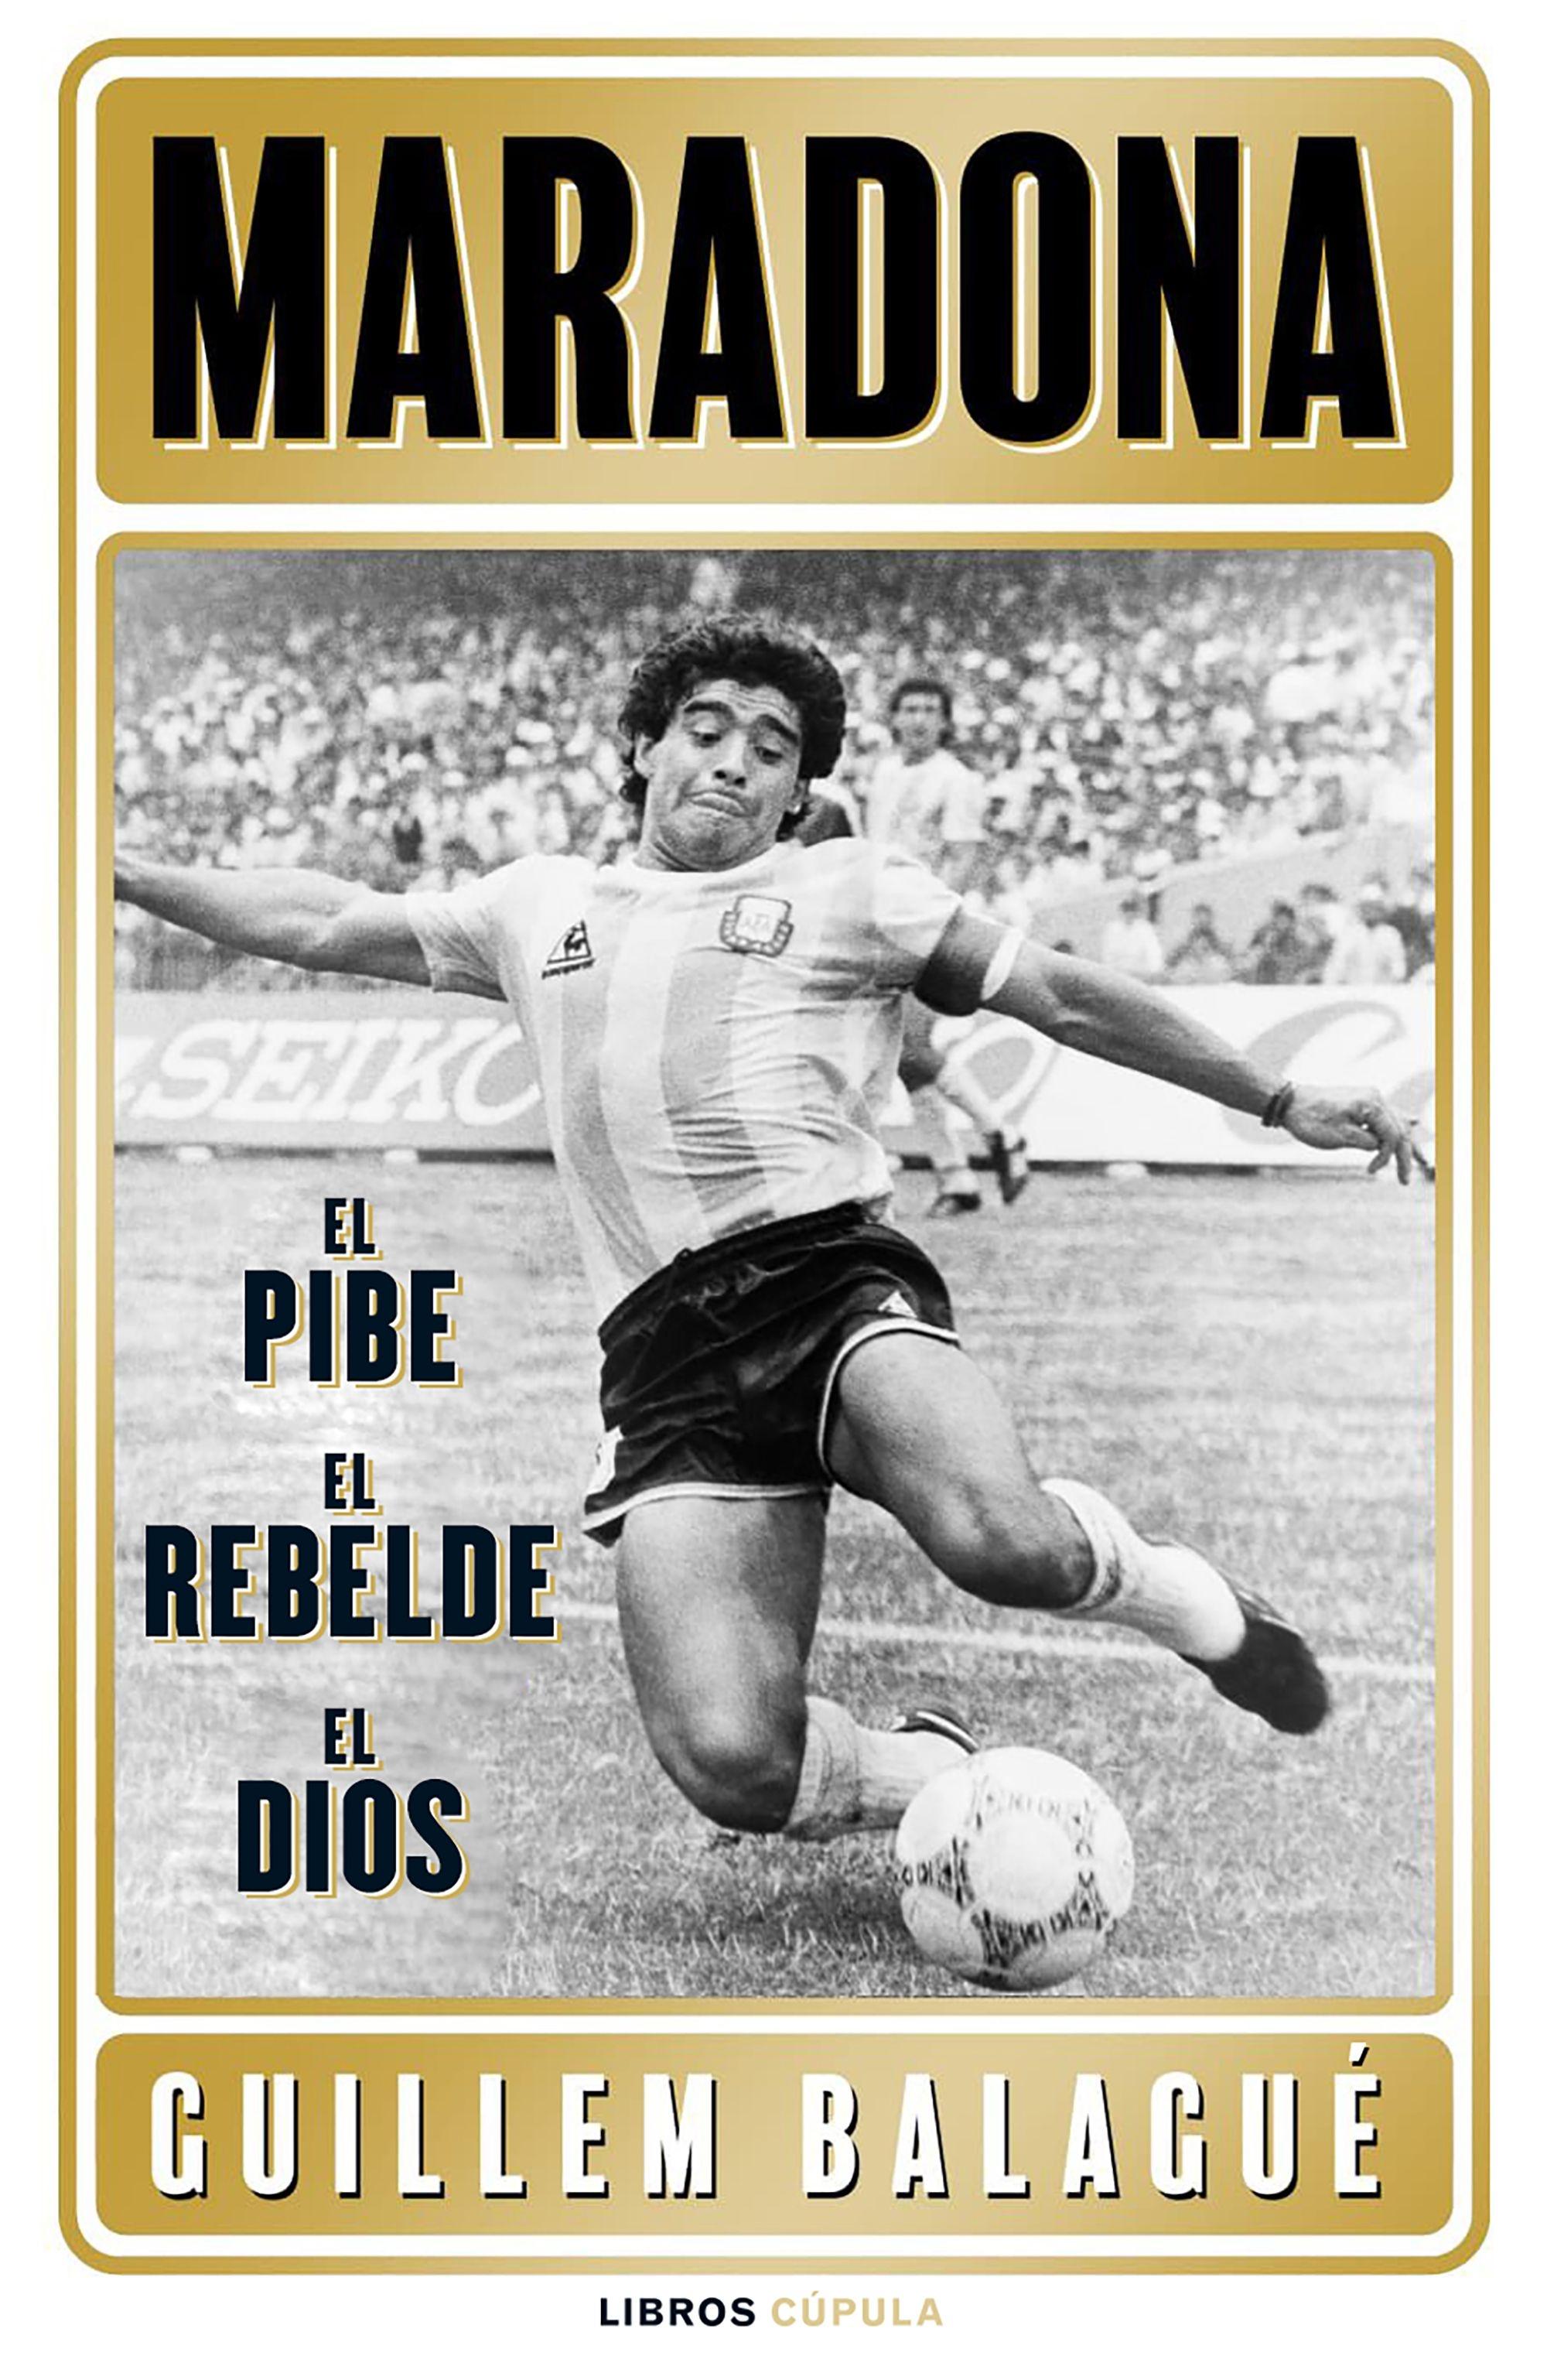 Maradona "El pibe, el rebelde, el dios"